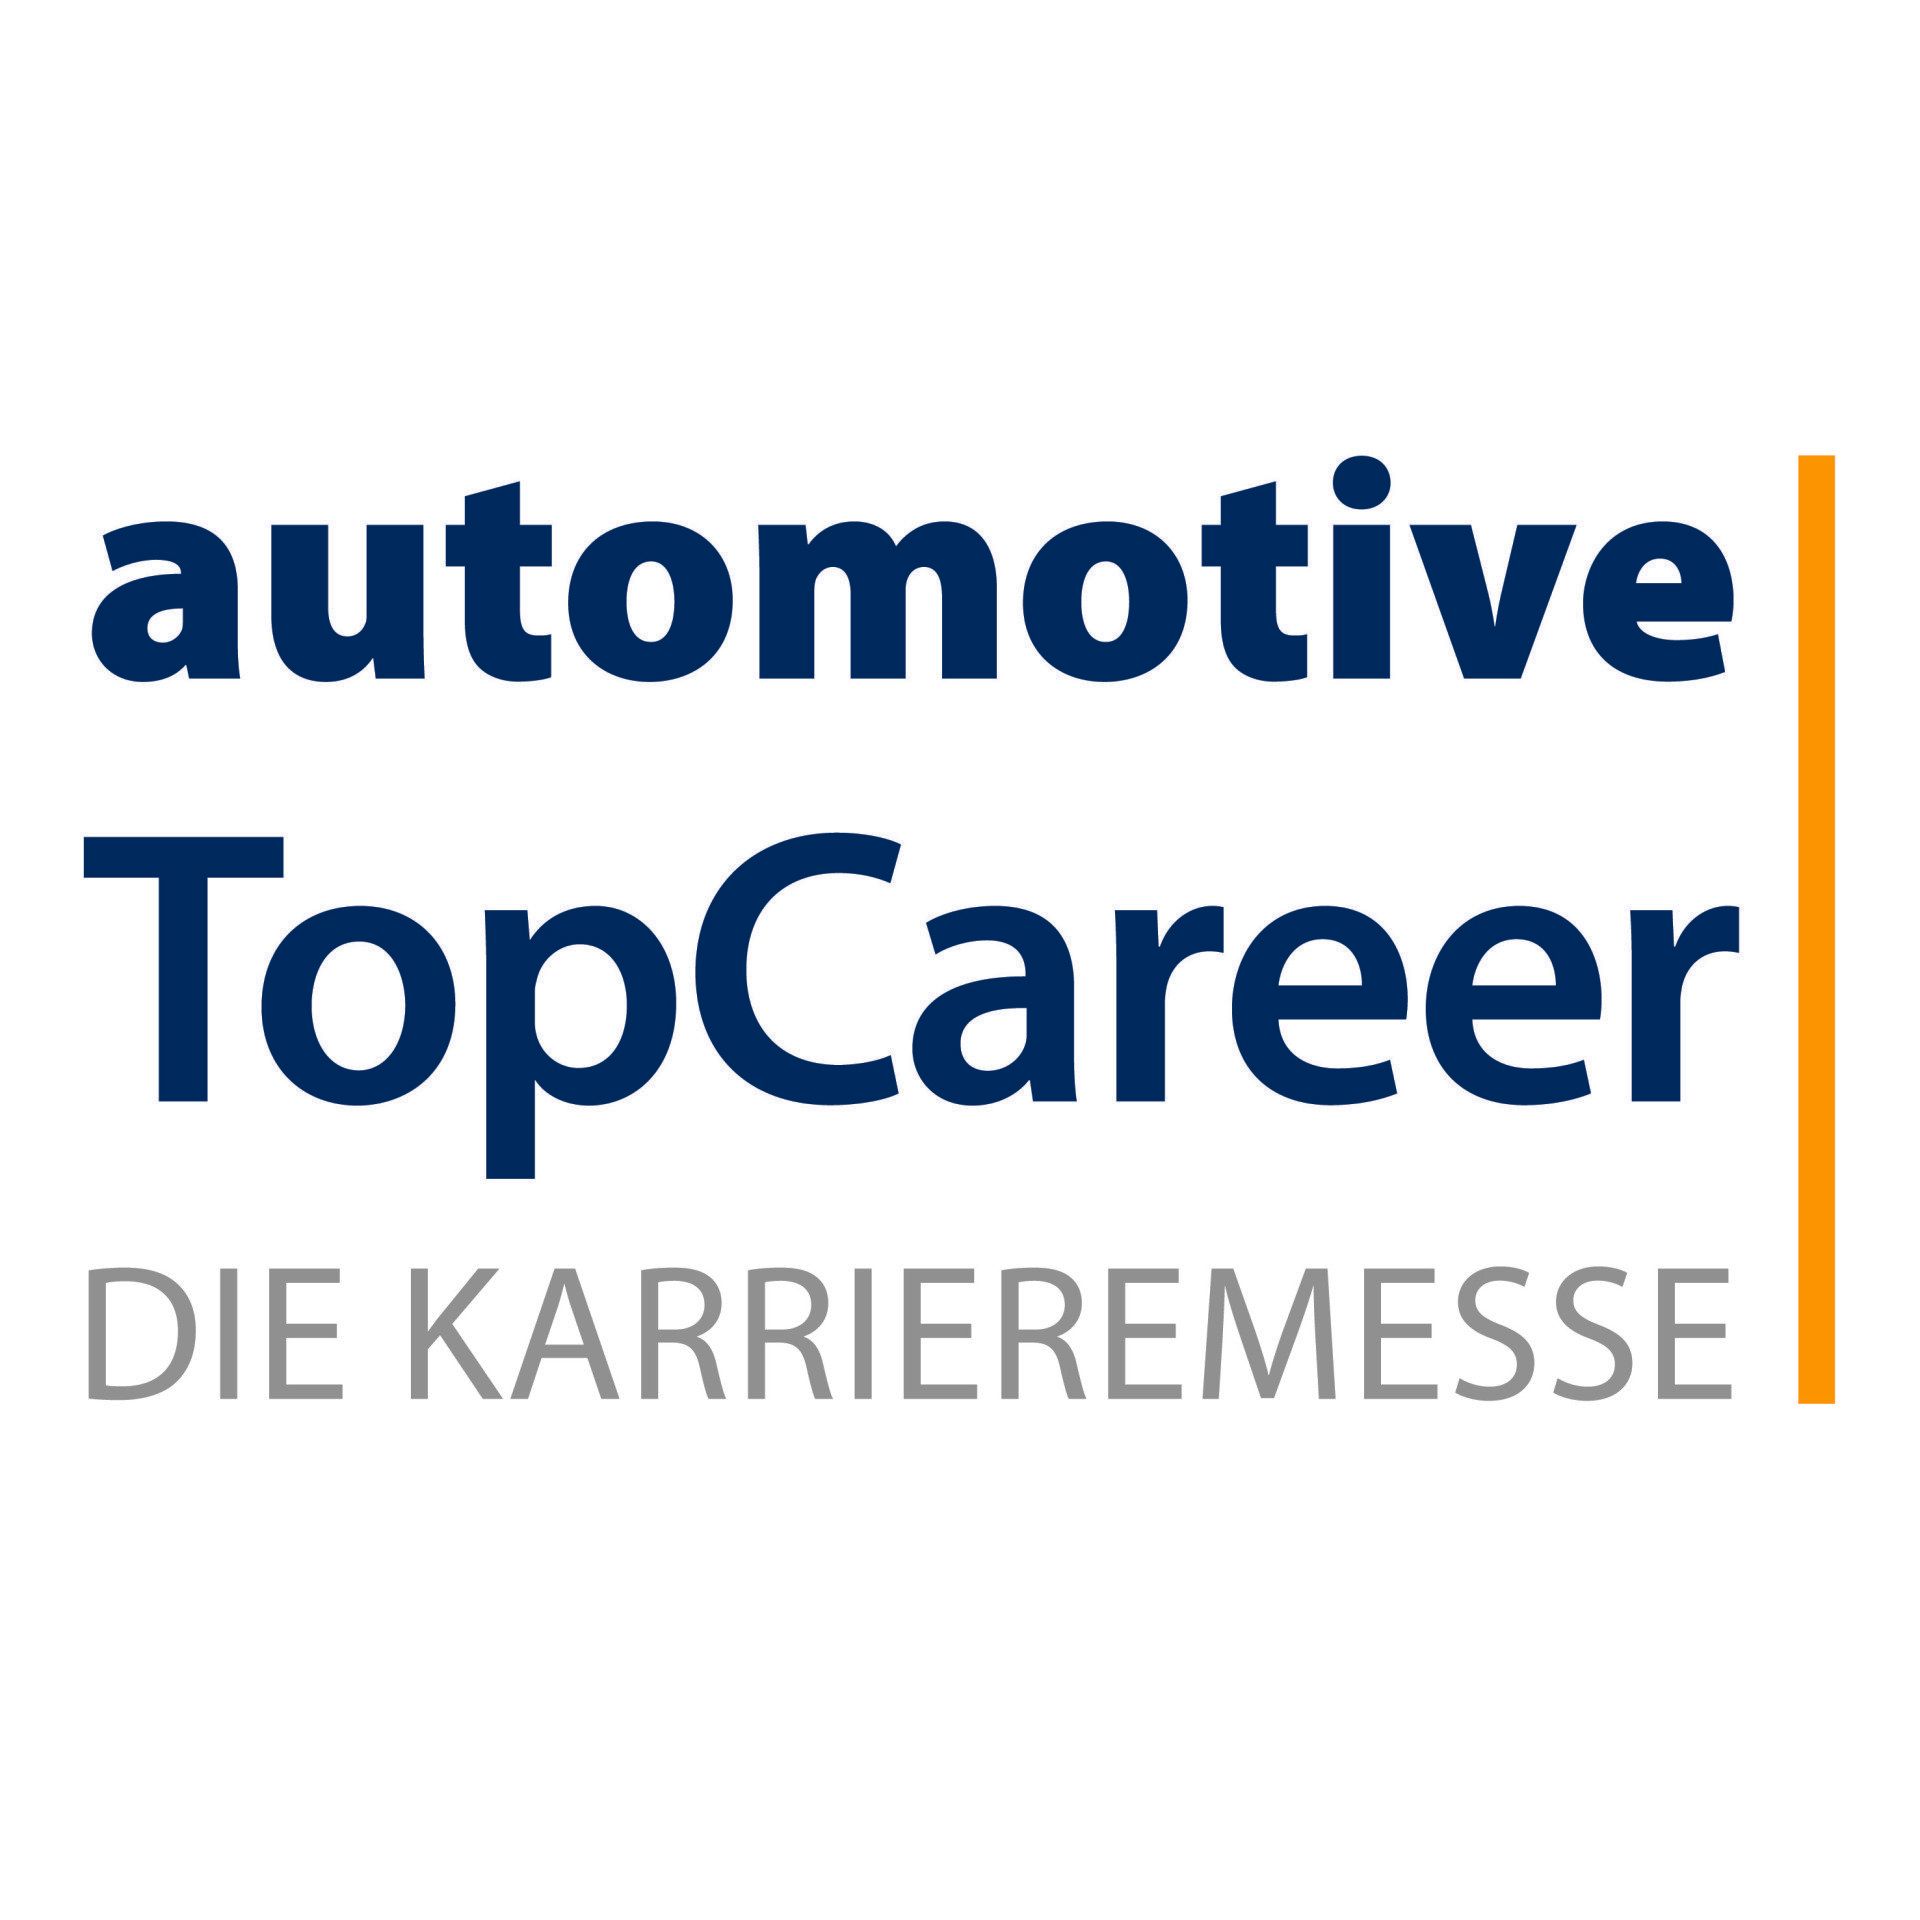 (c) Automotive-topcareer.de